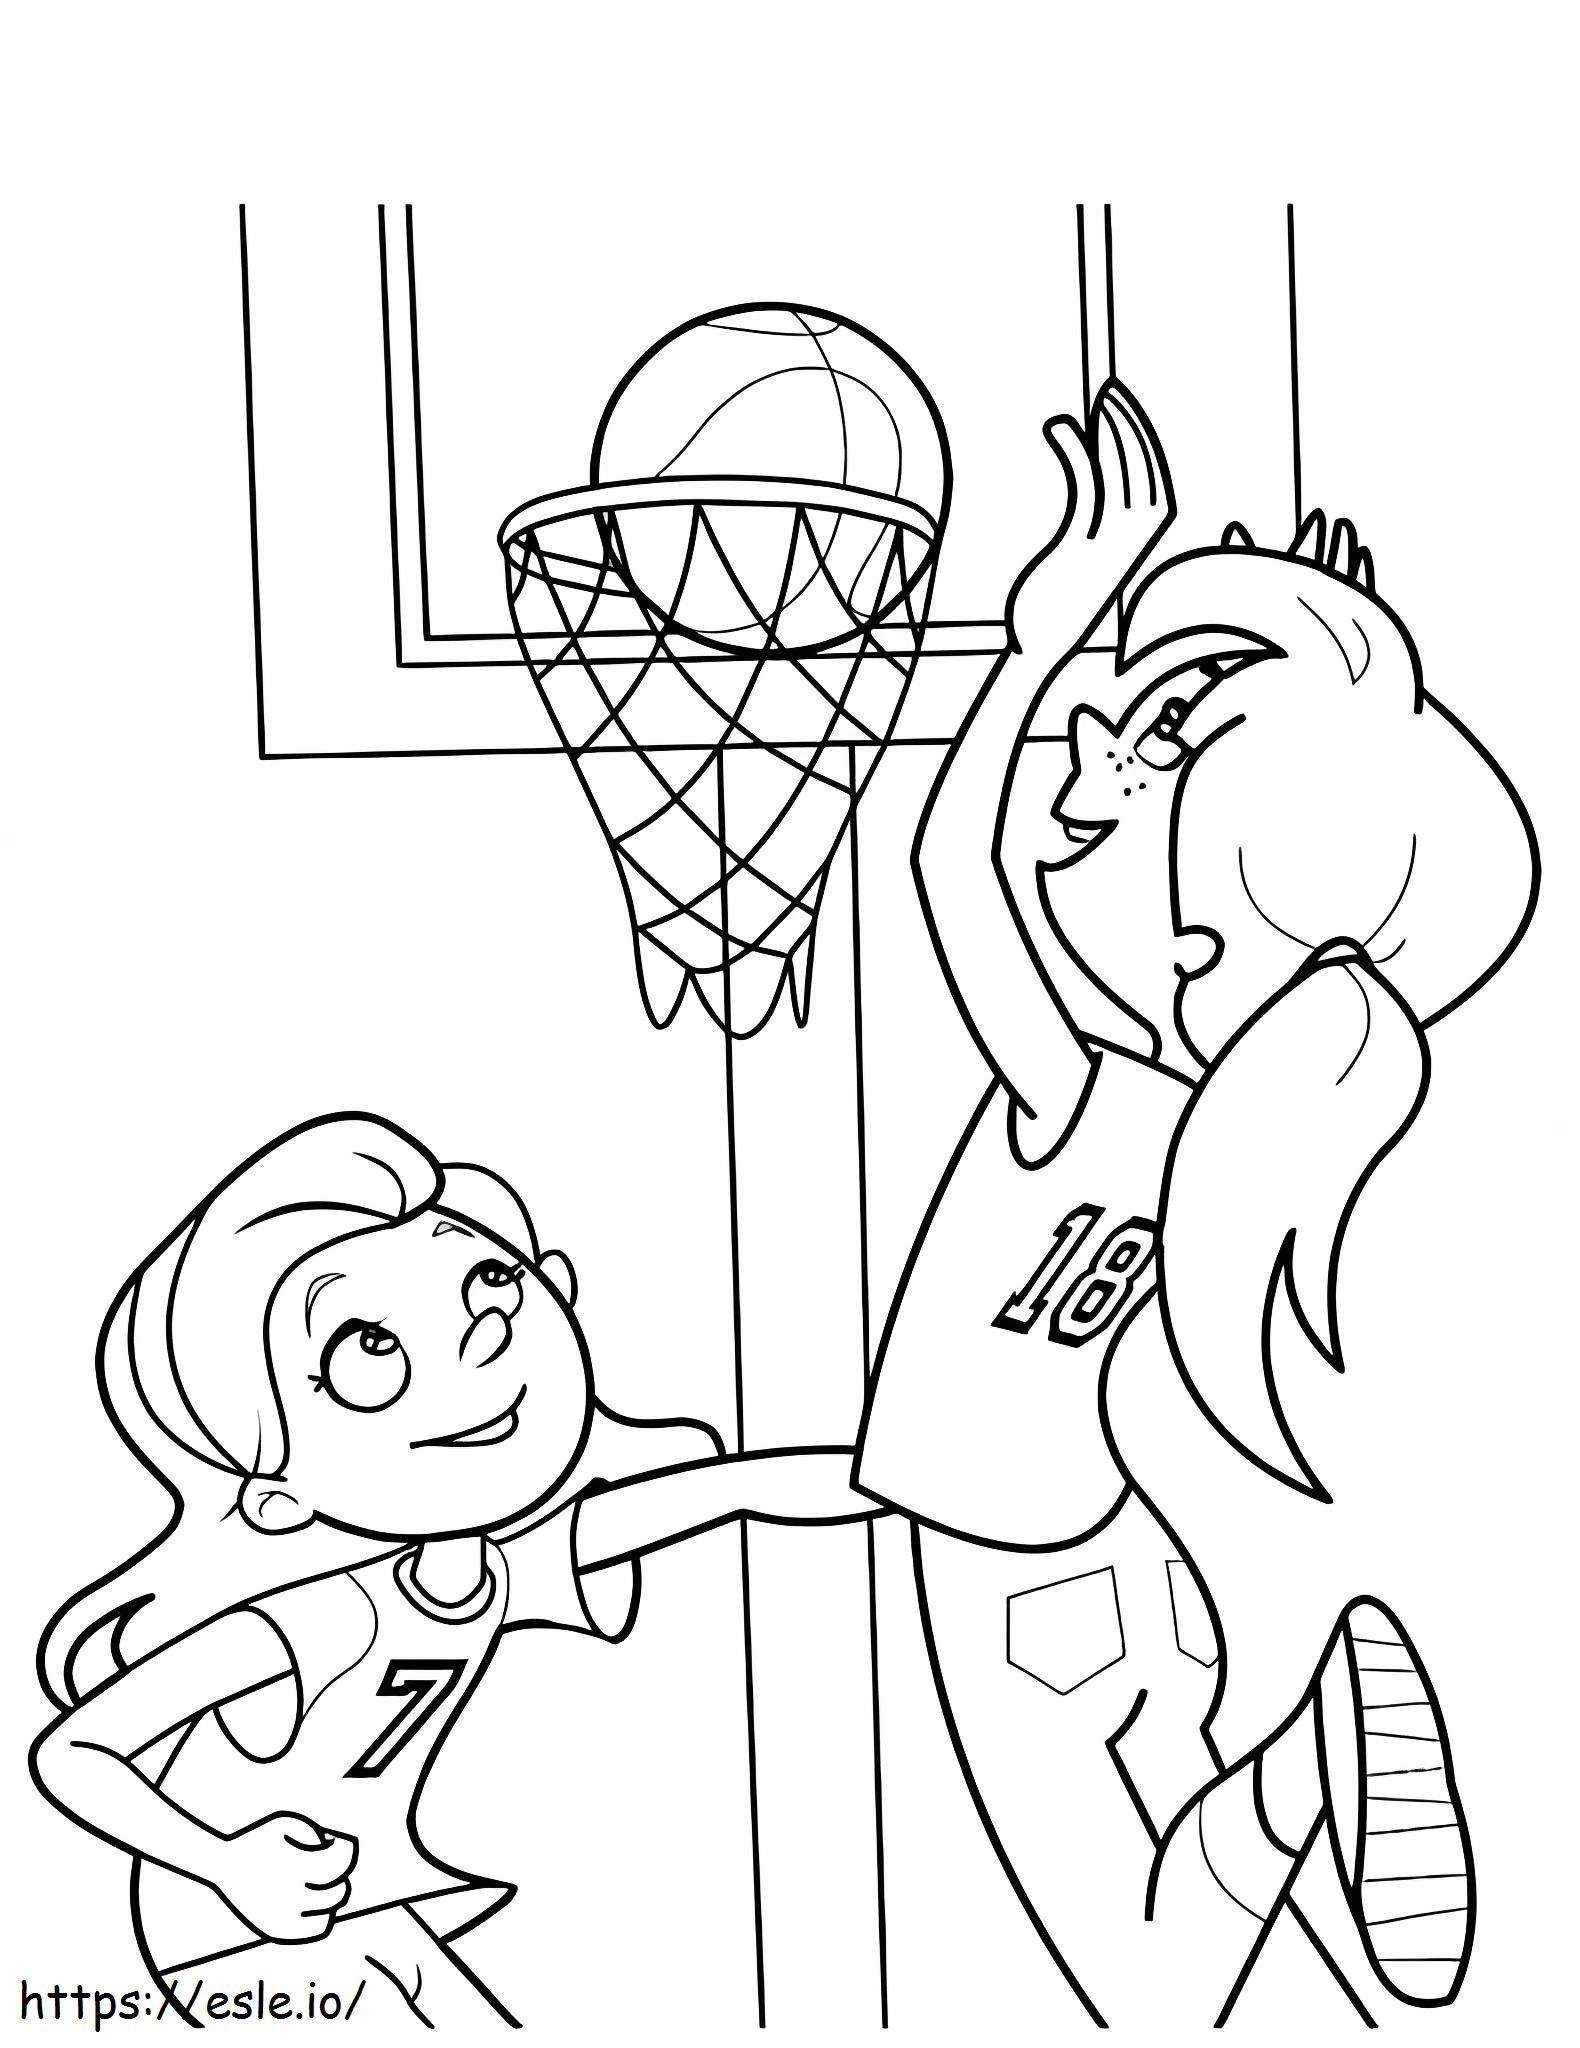 Coloriage 1559609256 Filles jouant au basket A4 à imprimer dessin